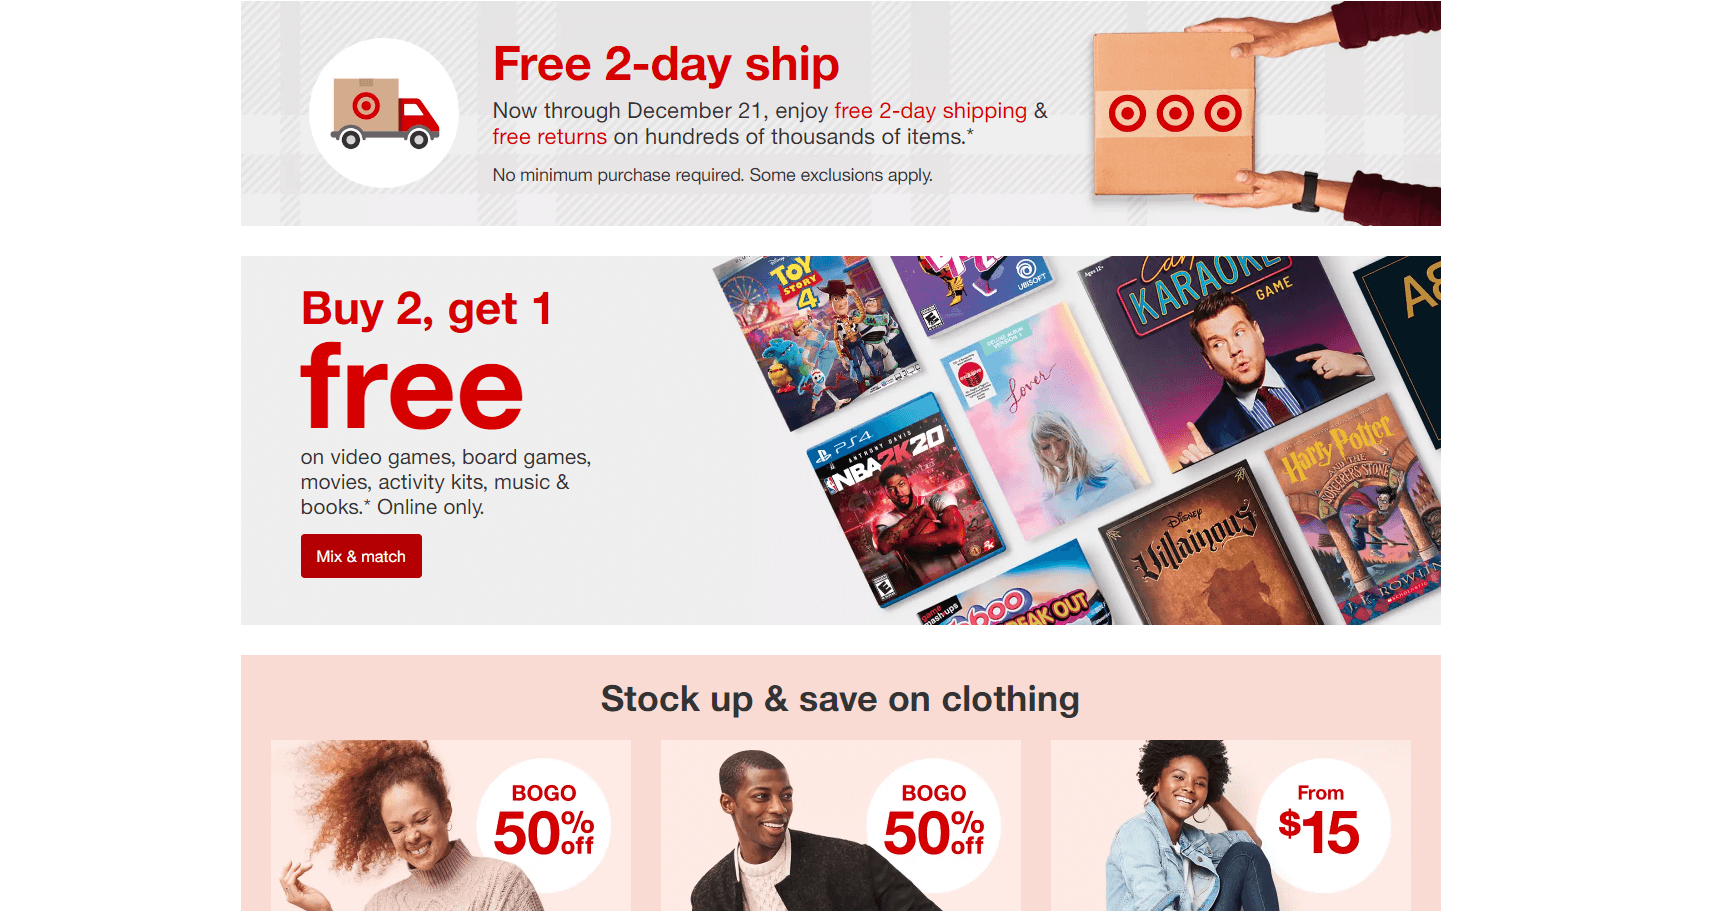 Идеальный интернет-магазин - бесплатная доставка на официальном сайте Target